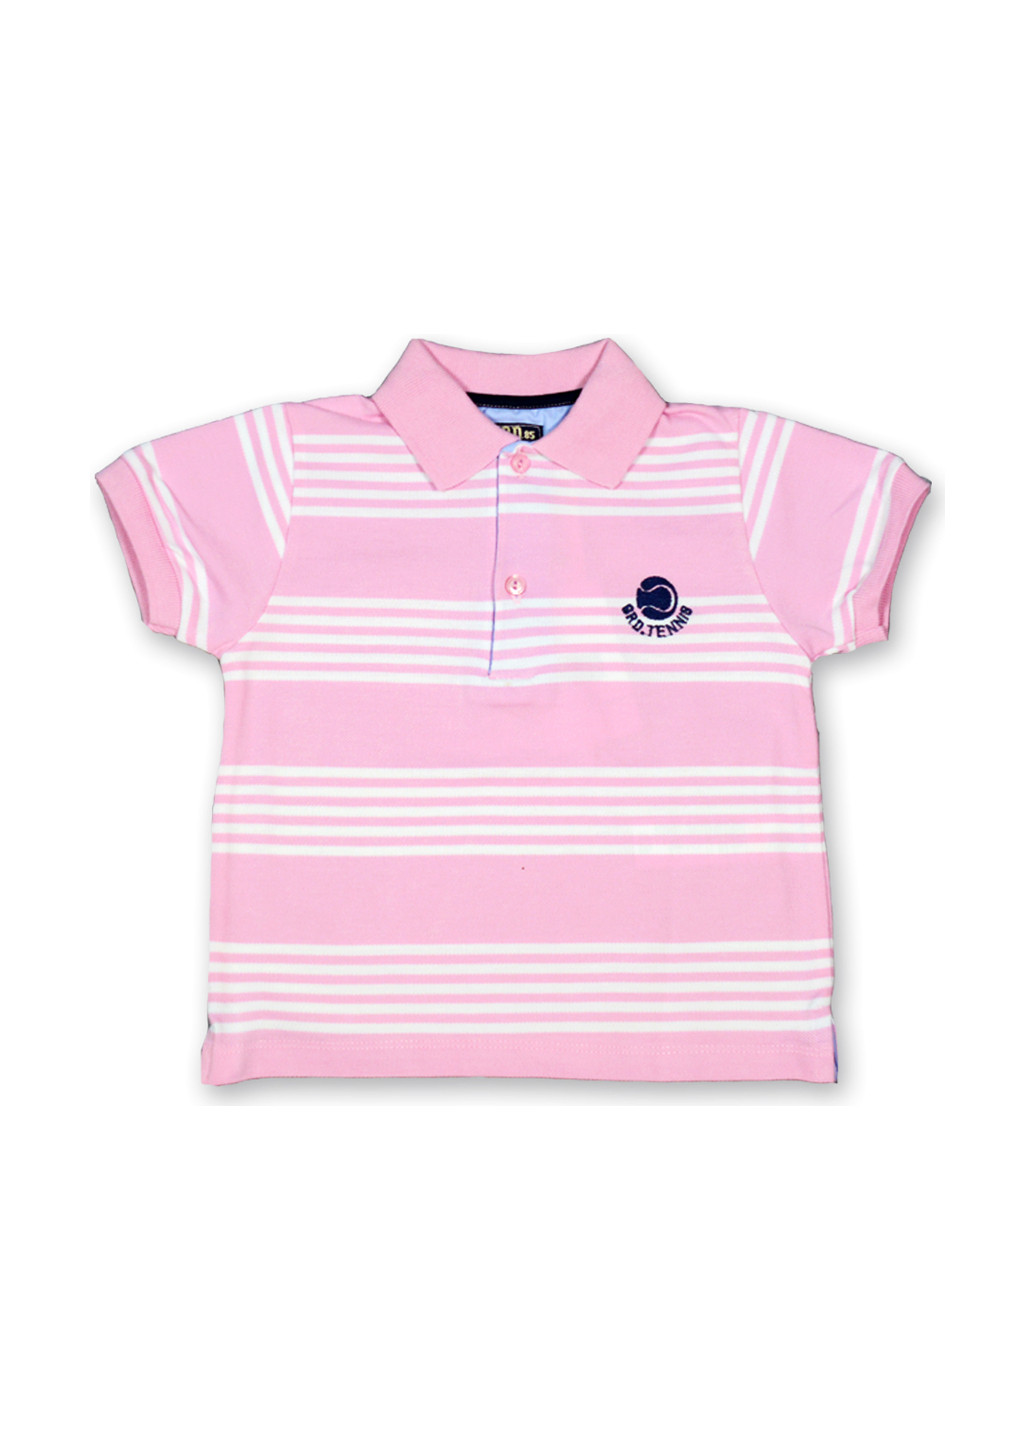 Розовая детская футболка-поло для мальчика Girandola в полоску